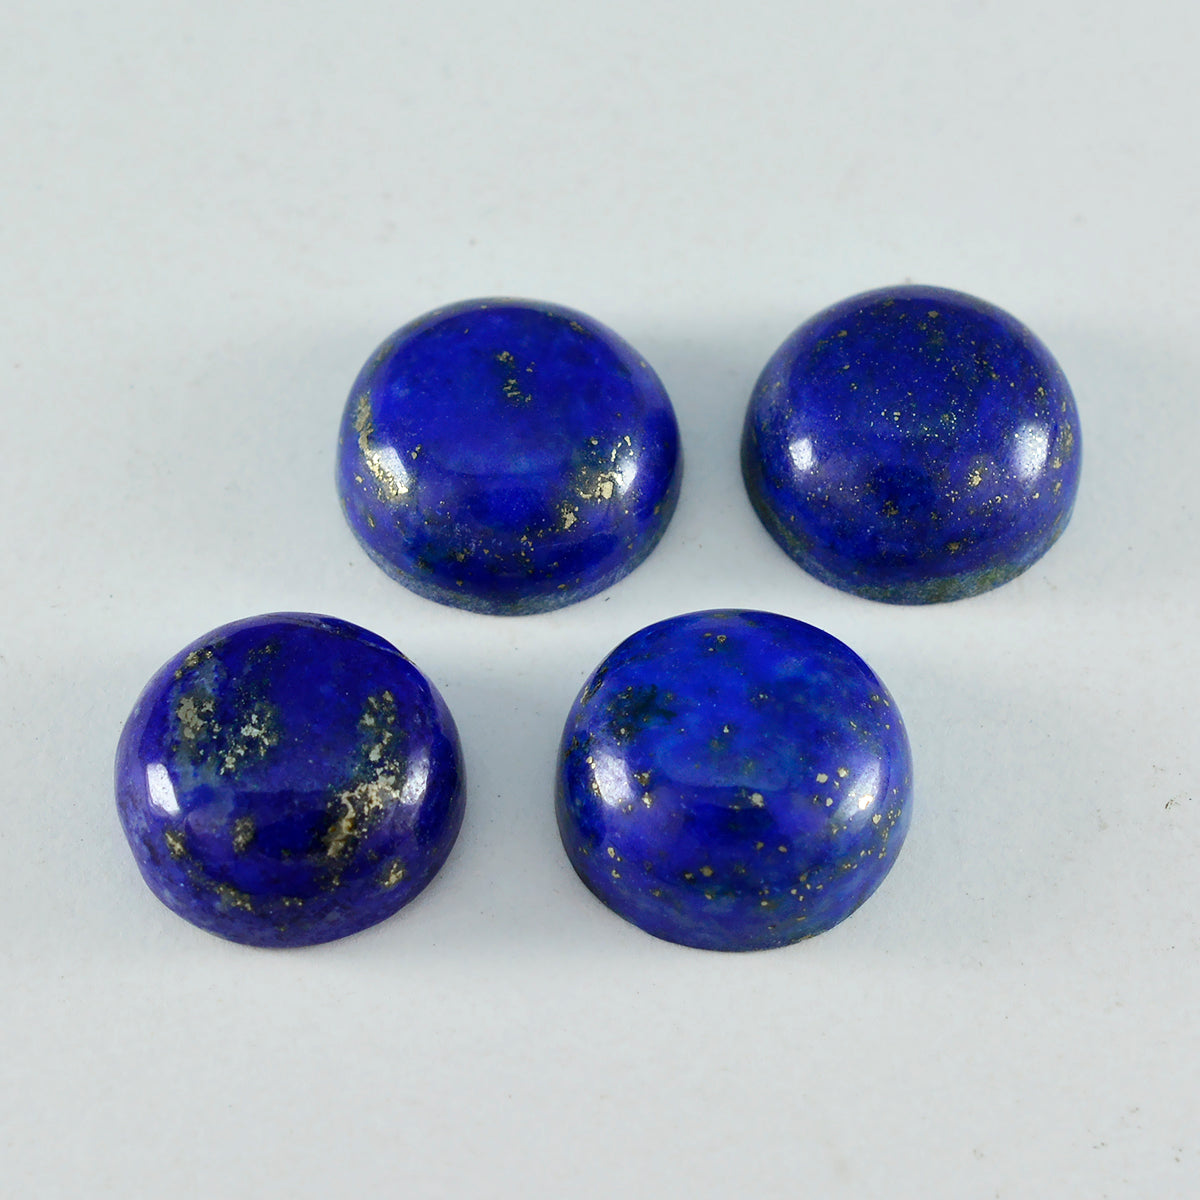 Riyogems 1PC Blue Lapis Lazuli Cabochon 15x15 mm Round Shape wonderful Quality Loose Stone